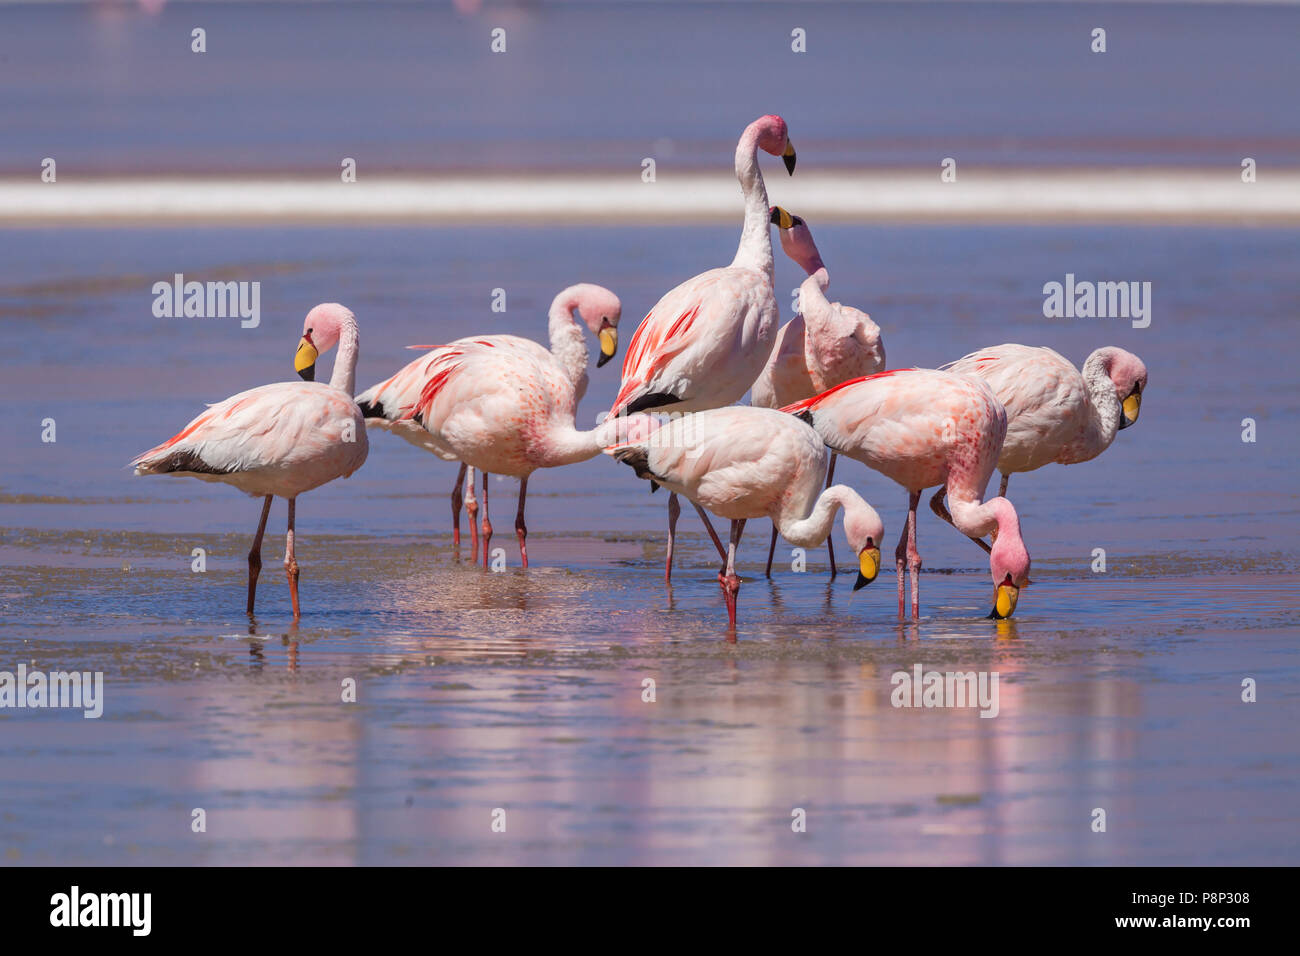 Group of James's Flamingo's (Phoenicoparrus jamesi) standing in half frozen saltlake Stock Photo